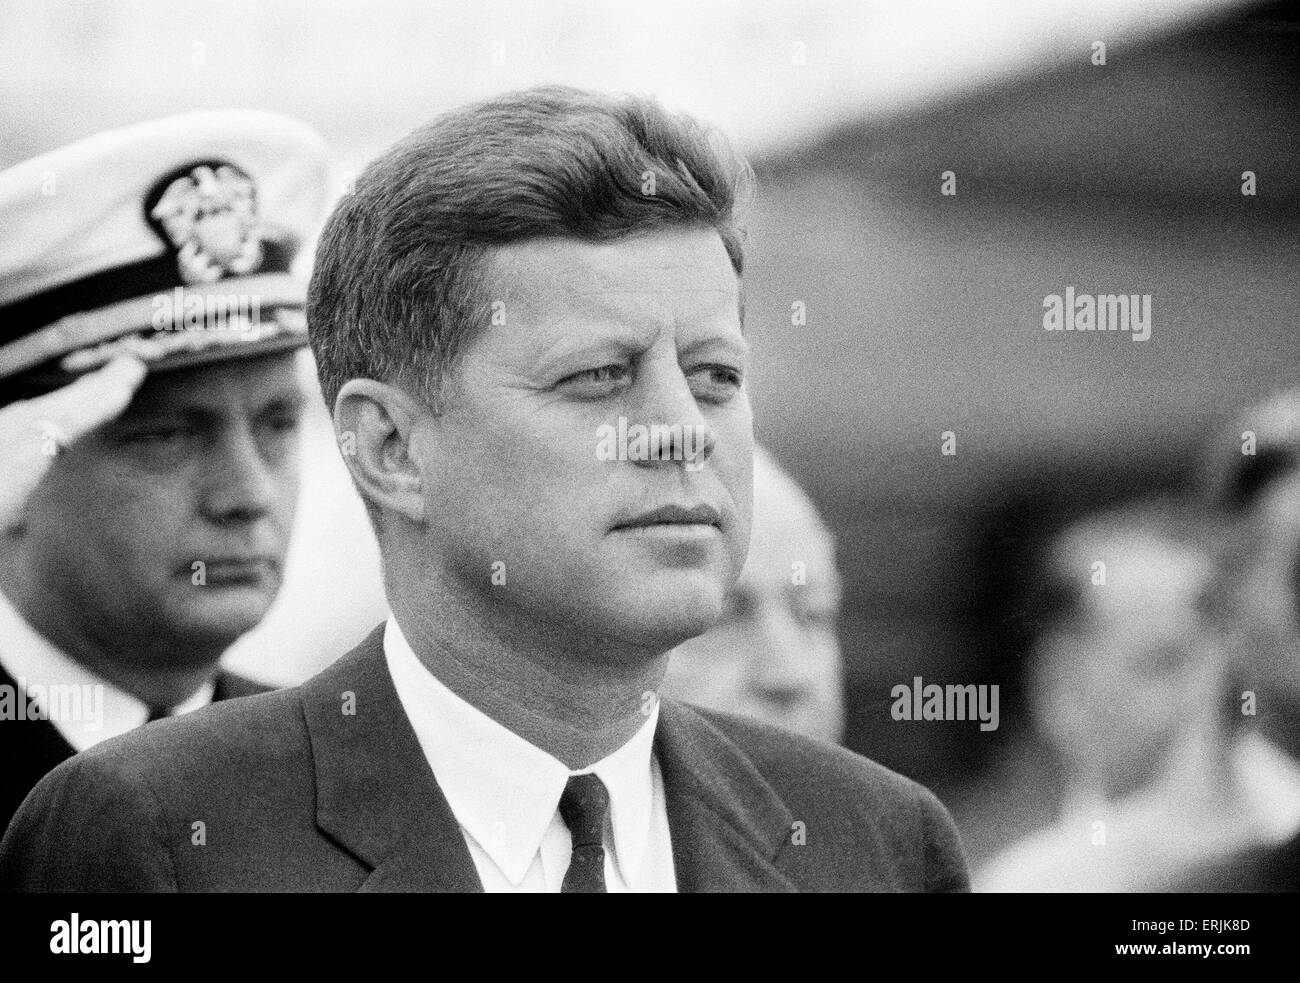 La visite du président américain John F. Kennedy à Vienne, Autriche pour des entretiens avec le Premier Ministre soviétique Nikita Khrouchtchev. 3e juin 1961. Banque D'Images